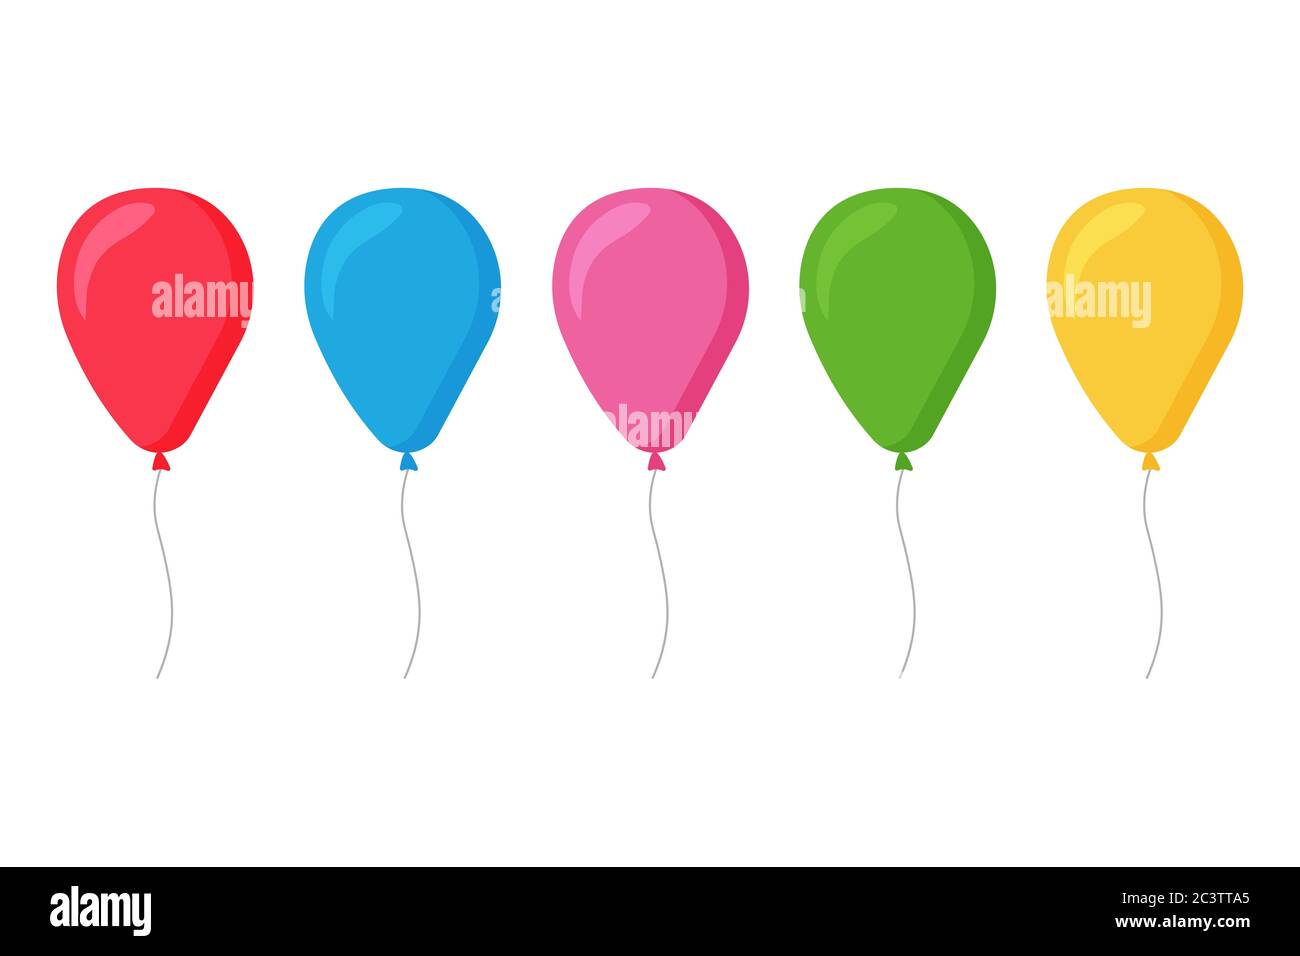 Caja de cumpleaños colorida volando con globos ilustración de dibujos  animados plana.